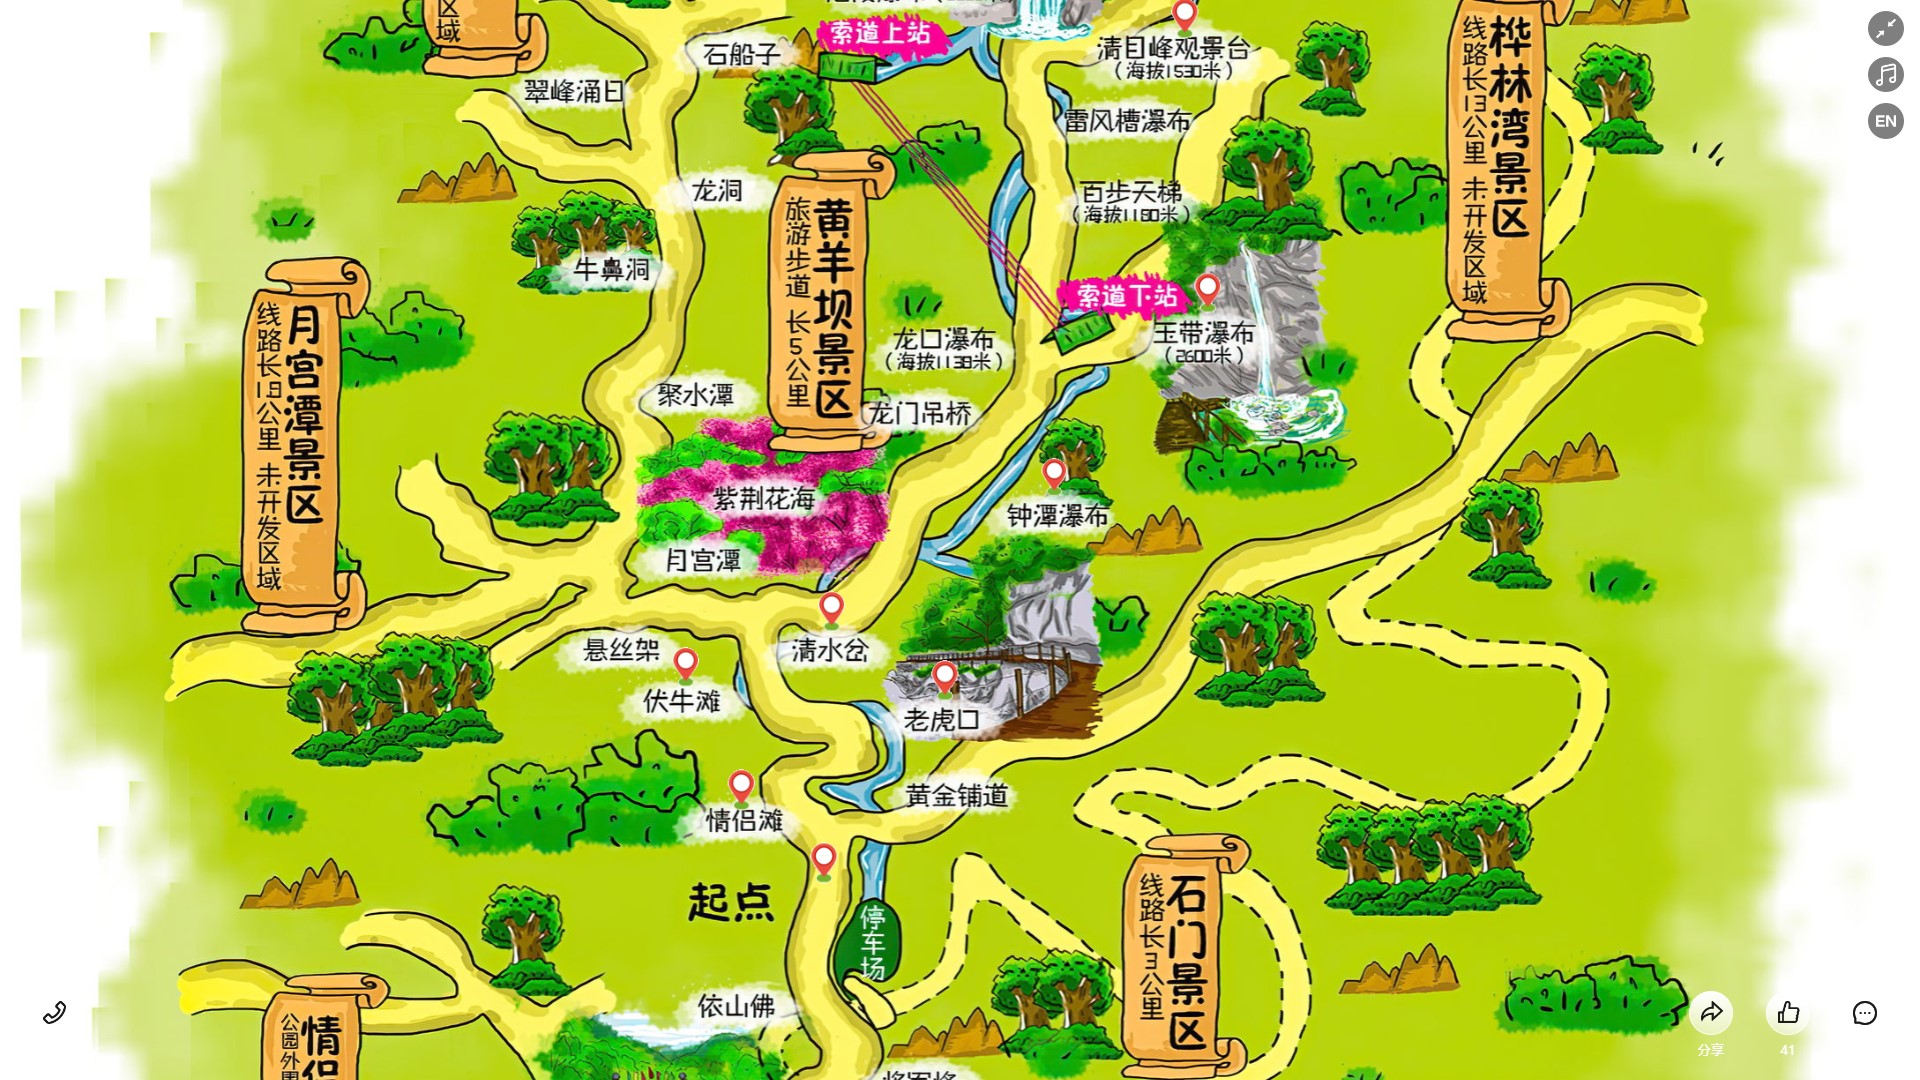 蔡甸景区导览系统